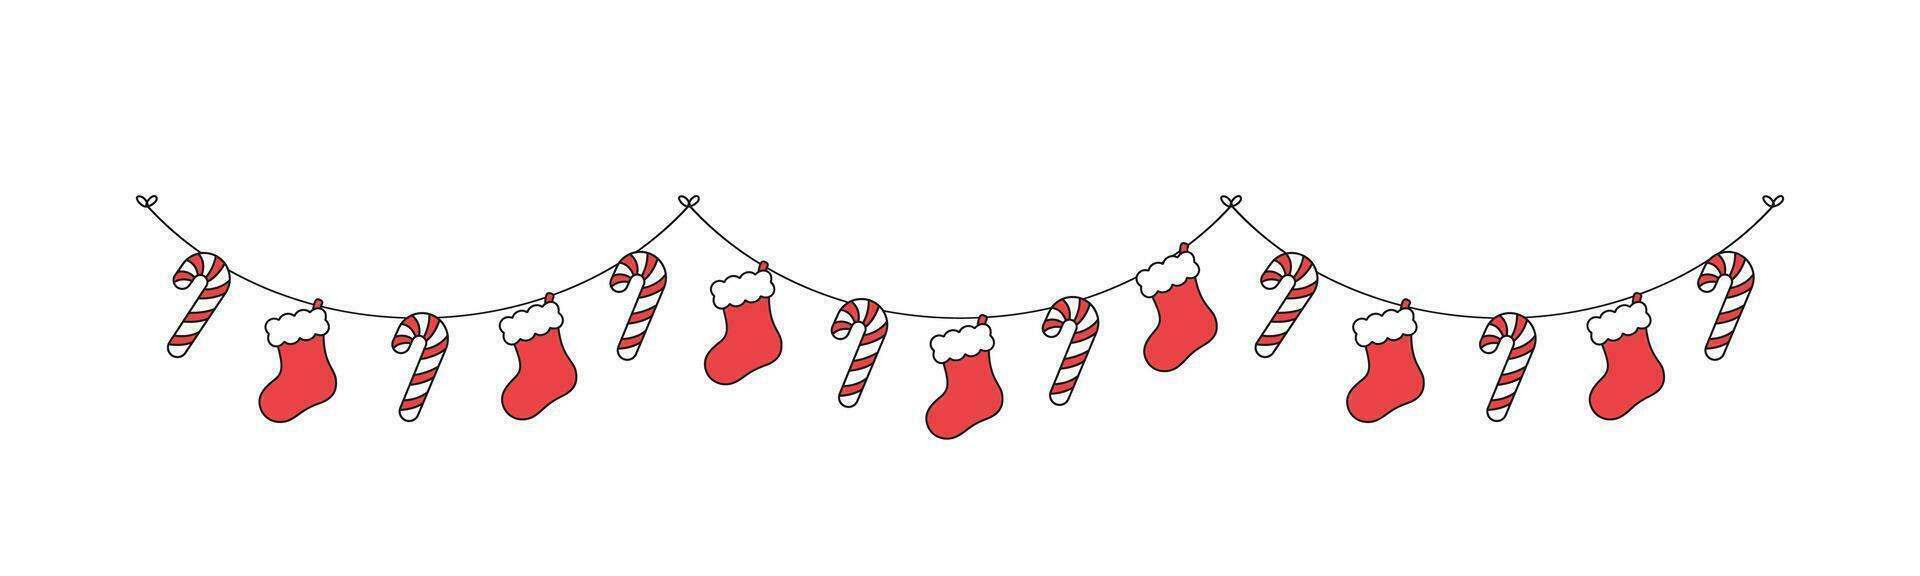 Noël stockage et bonbons canne guirlande vecteur illustration, Noël graphique de fête hiver vacances saison bruant